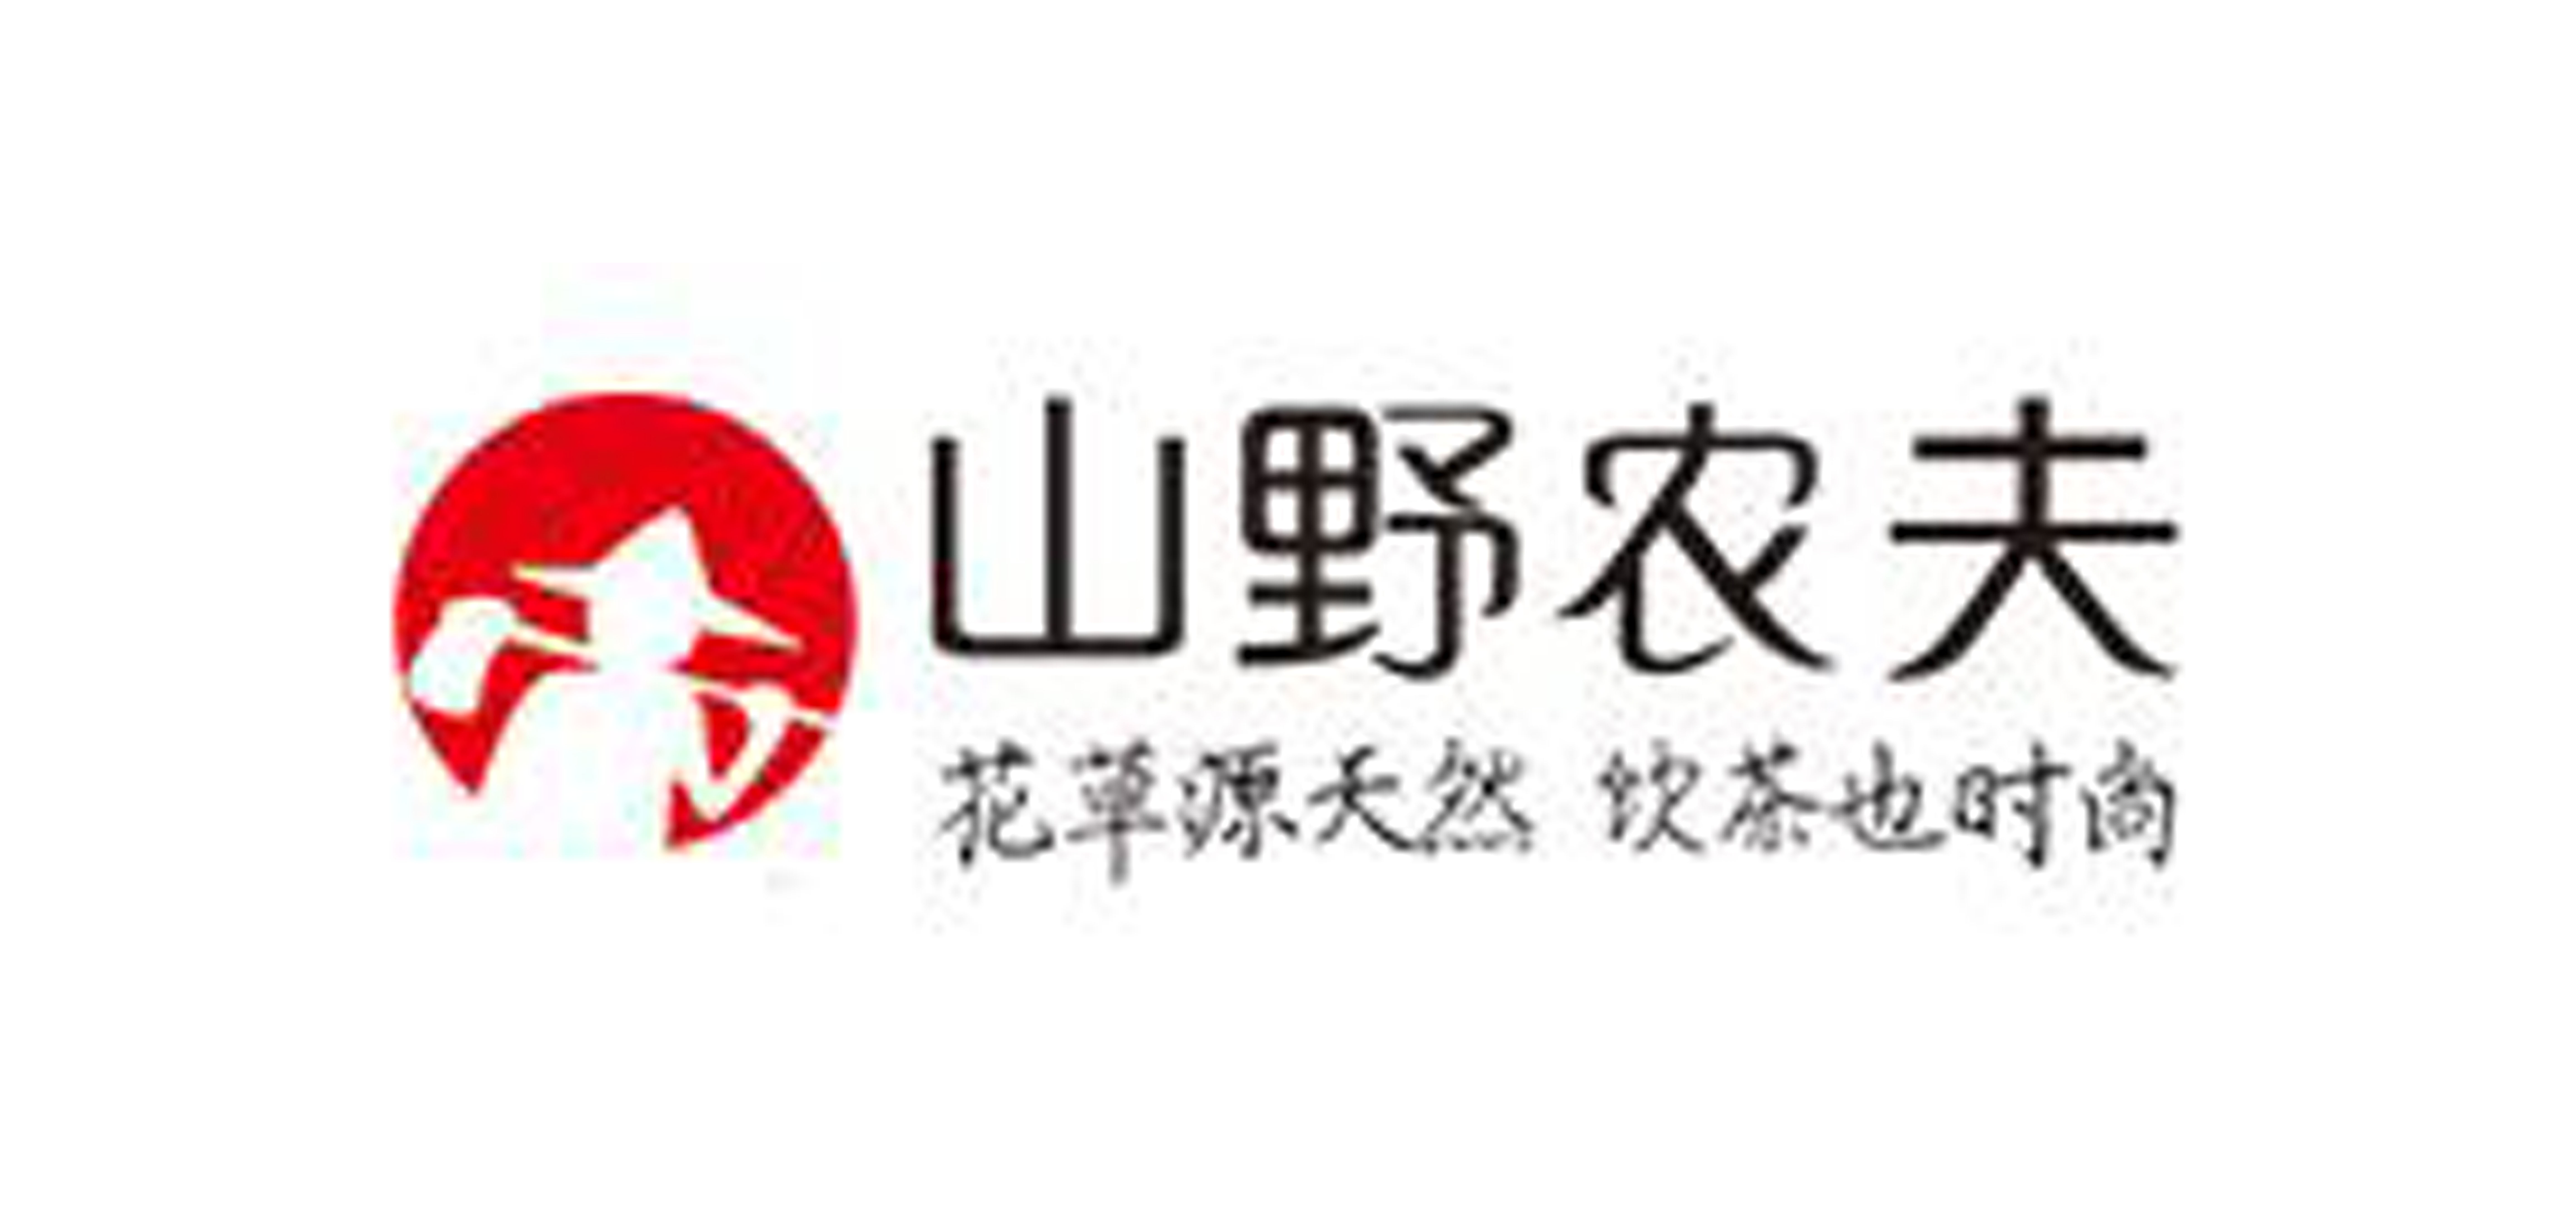 山野农夫铁观音标志logo设计